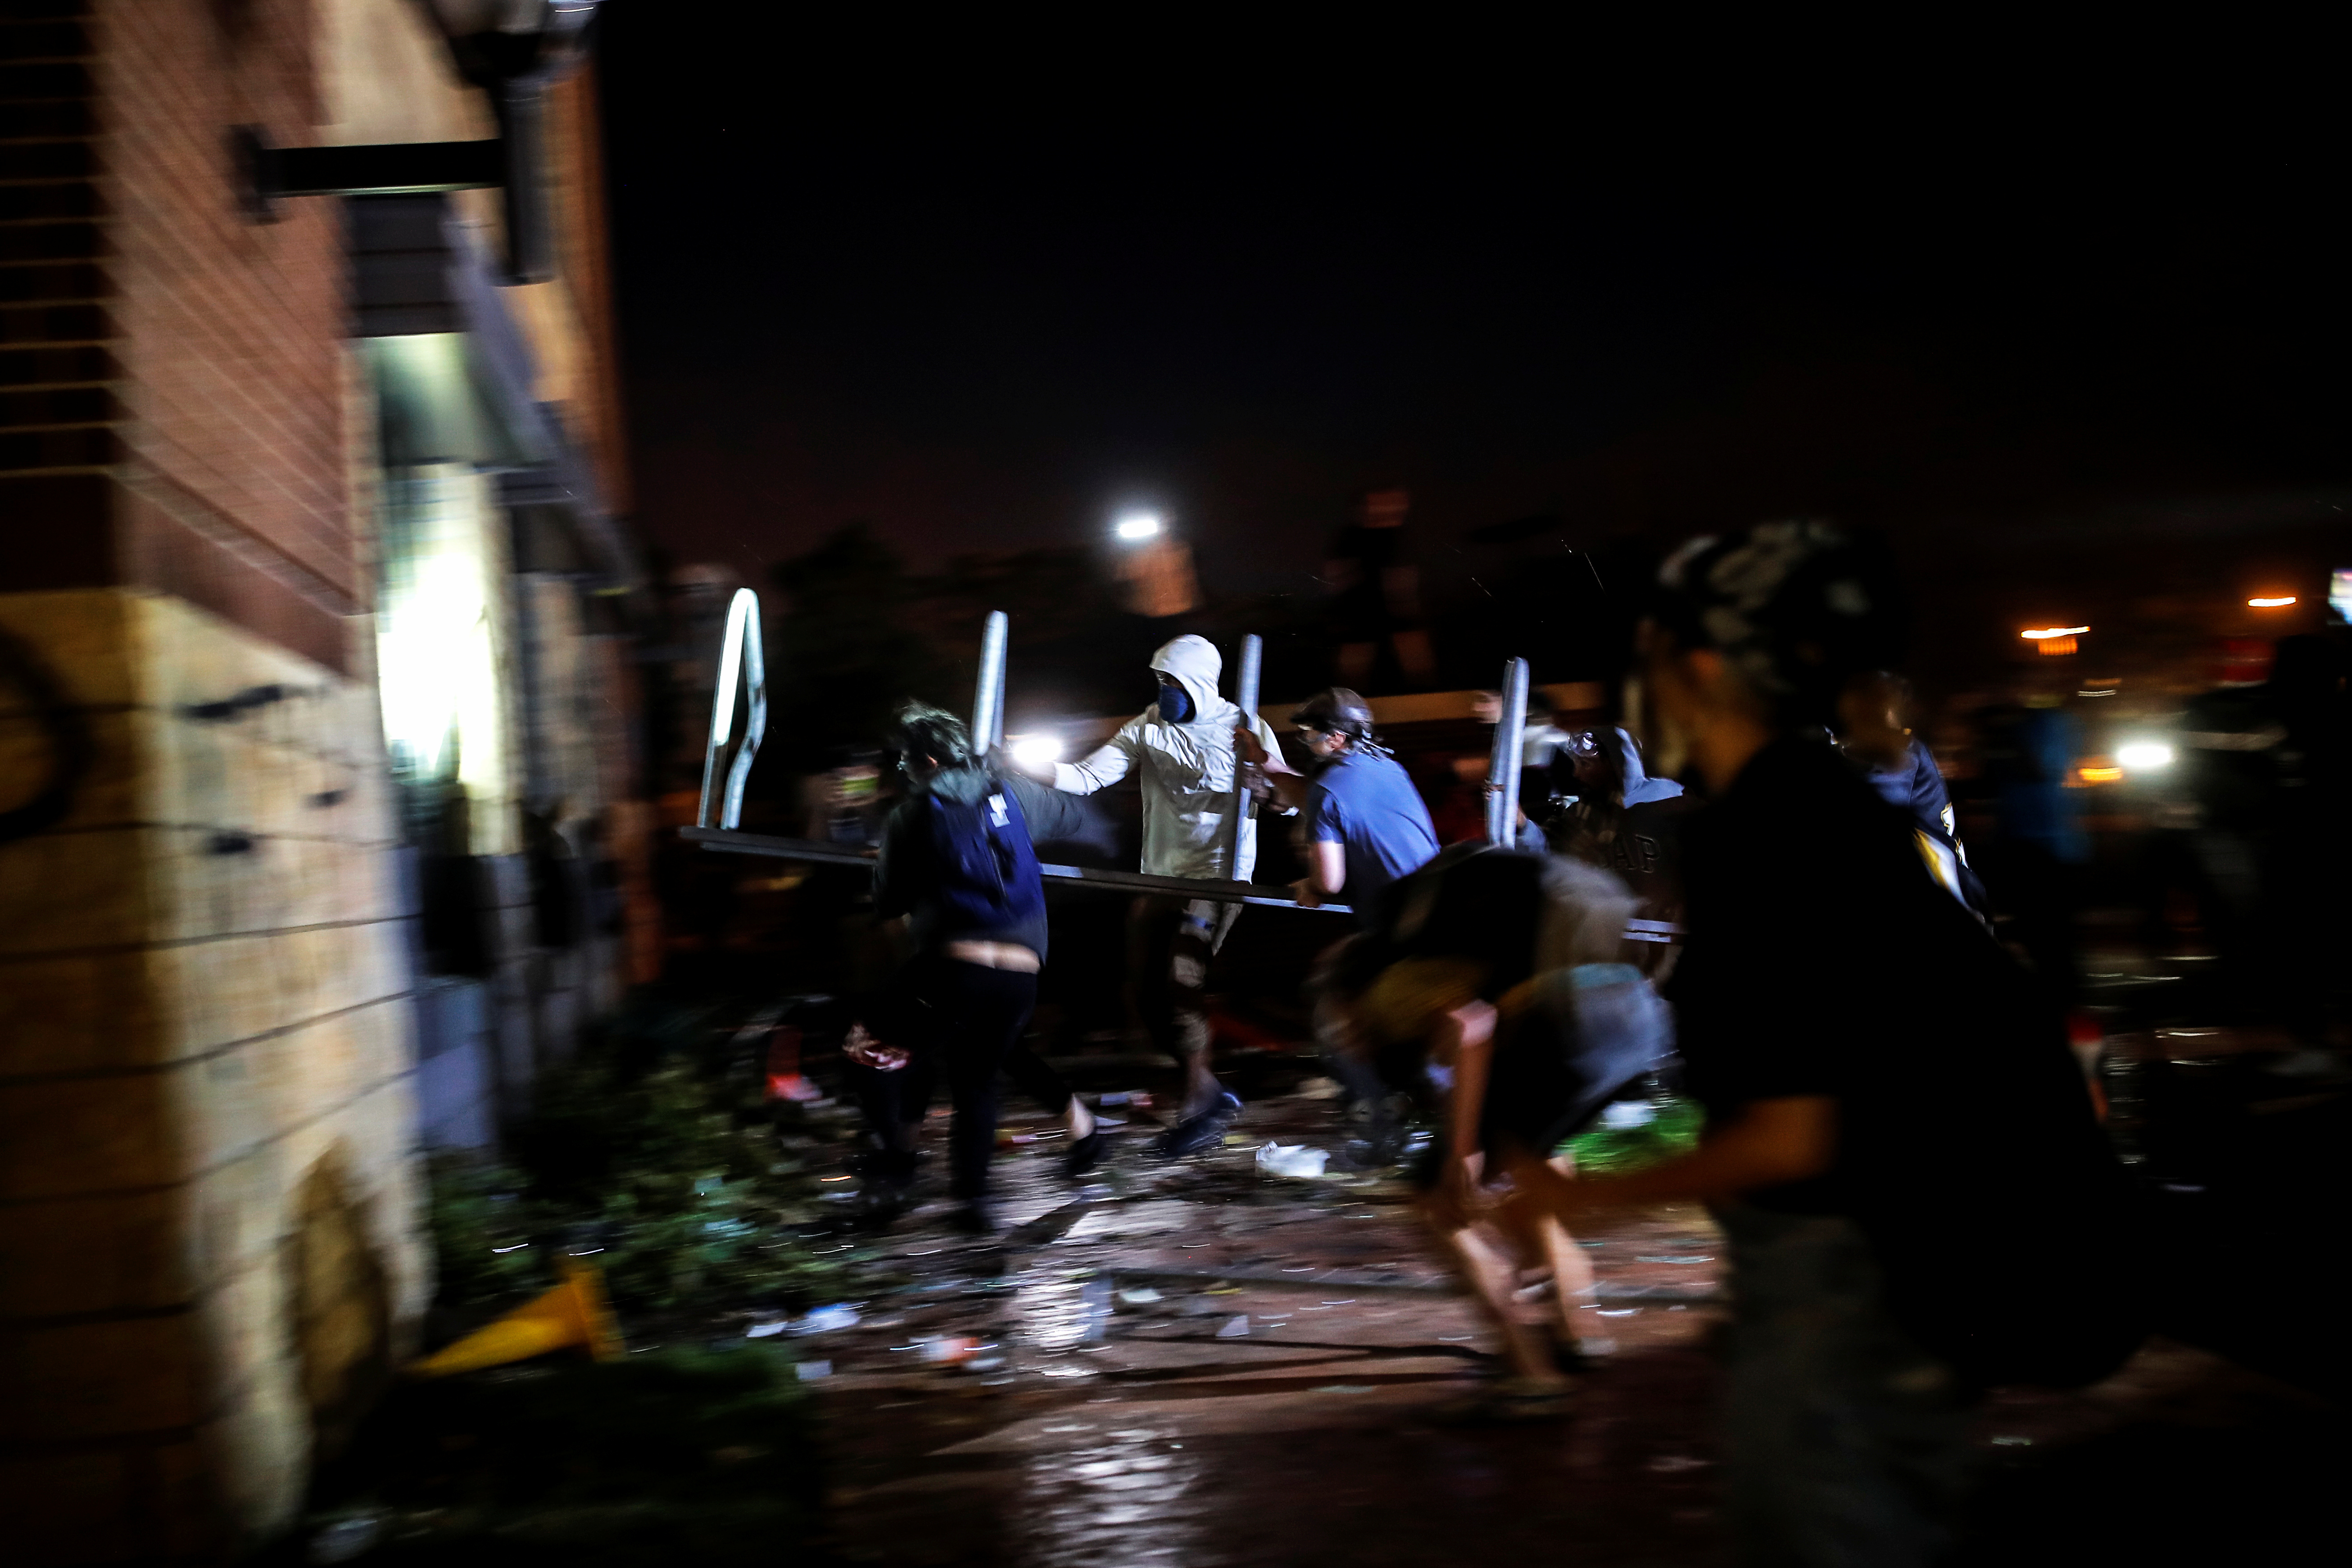 Manifestantes intentado ingresar a la estación de policía (Reuters/ Carlos Barria)